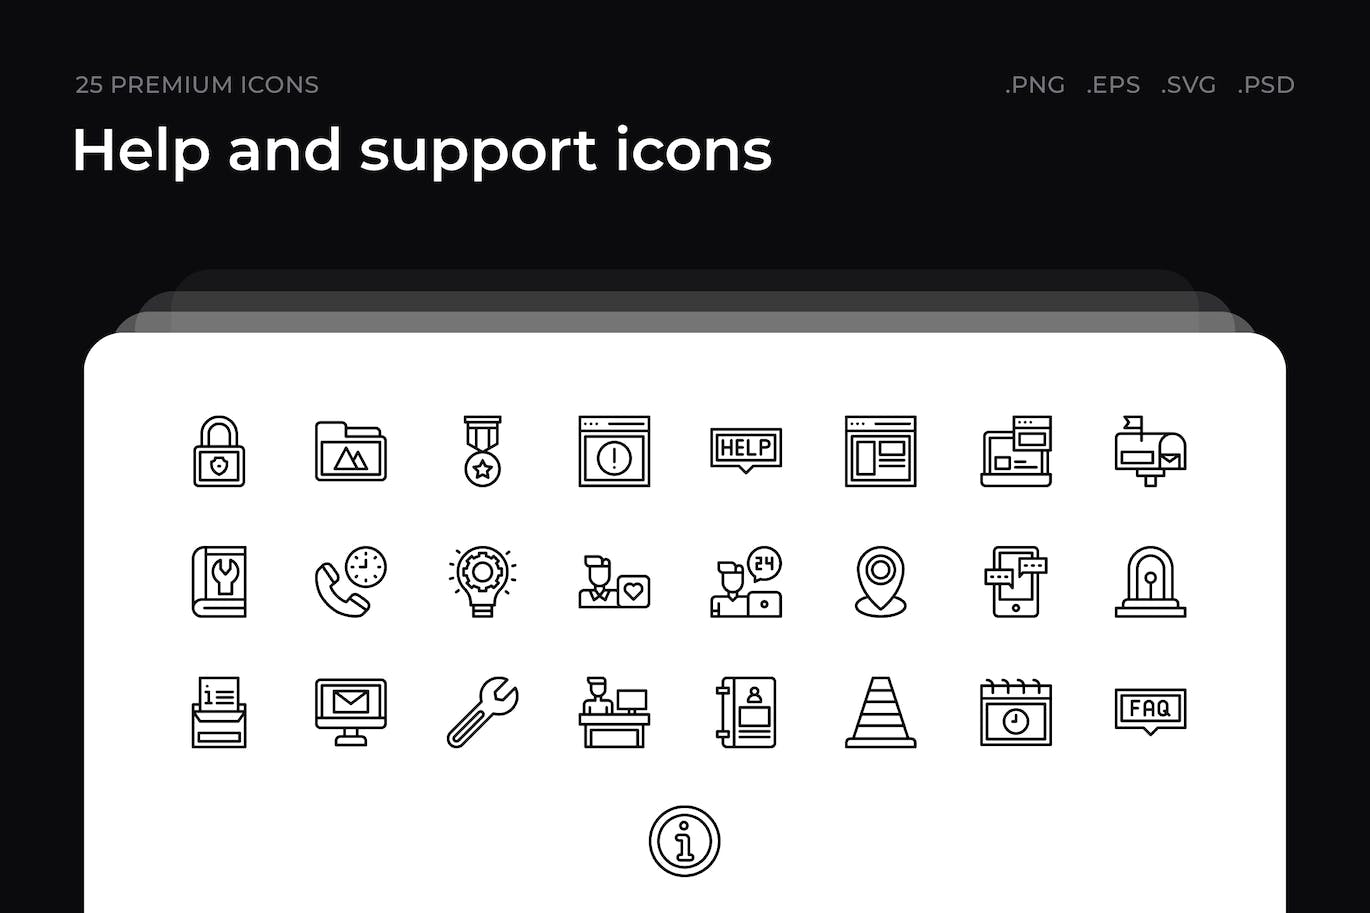 25枚帮助和支持主题简约线条矢量图标 Help and support icons 图标素材 第1张